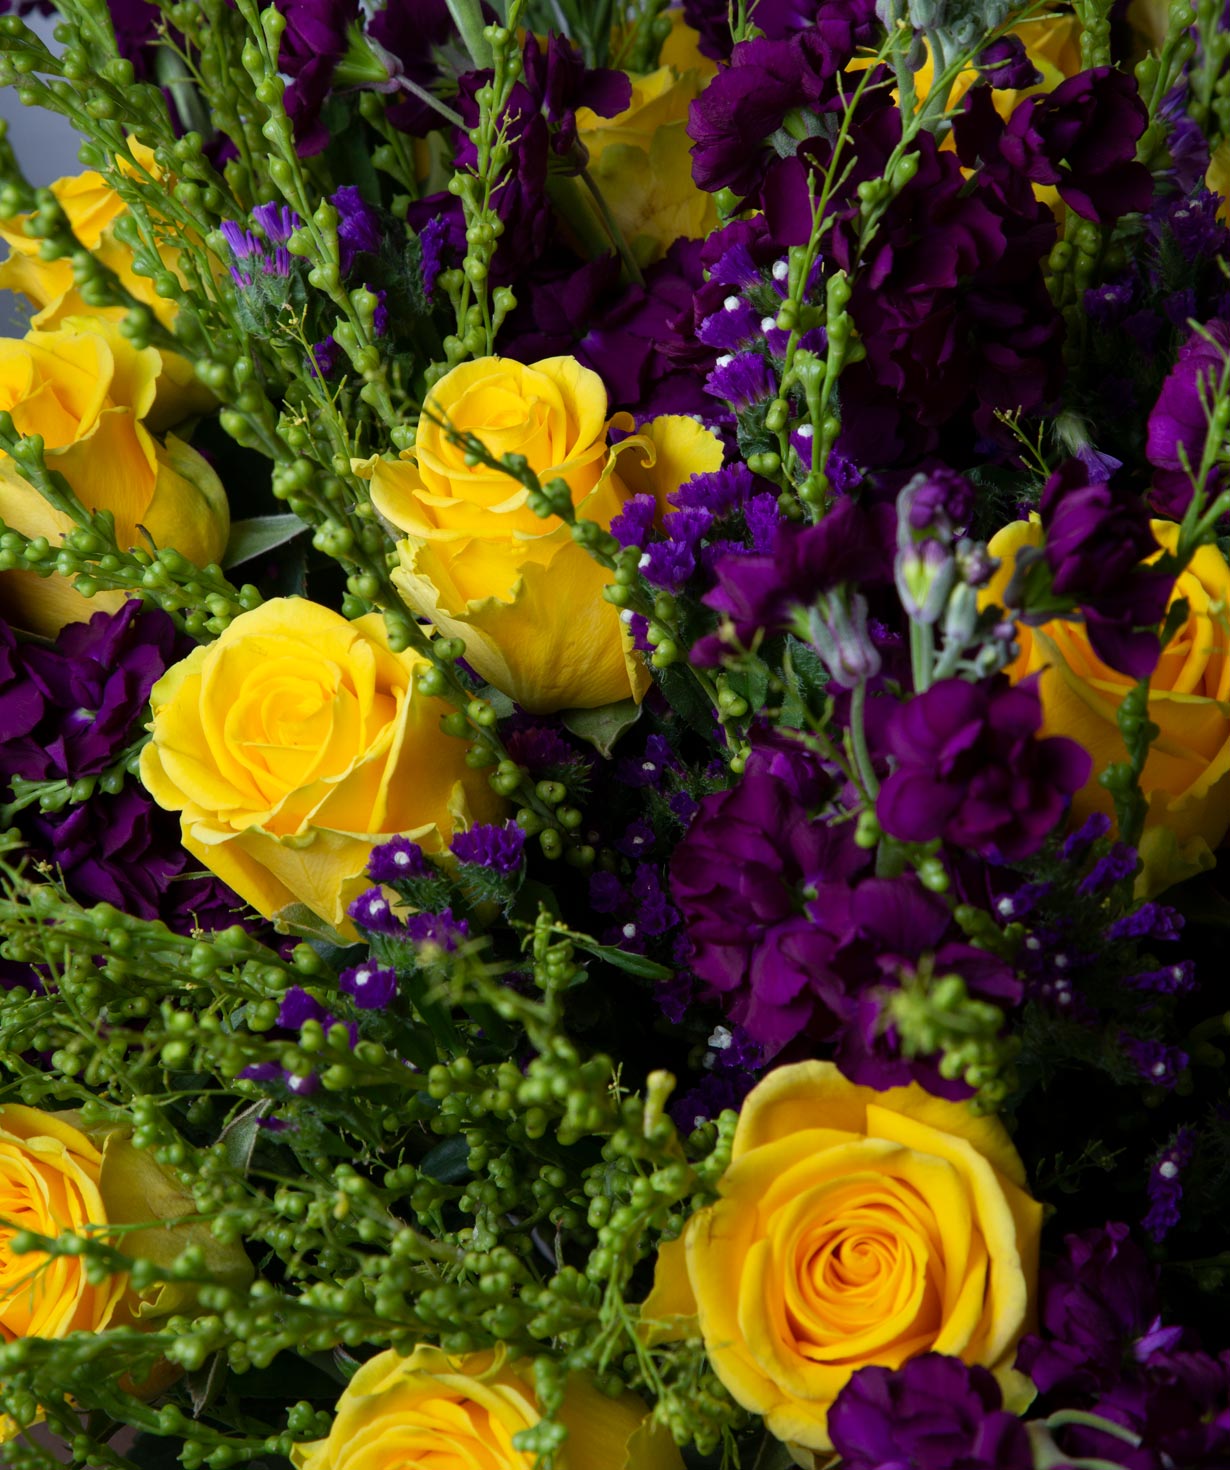 Ծաղկեփունջ «Վիկտորիա» վարդերով և դաշտային ծաղիկներով